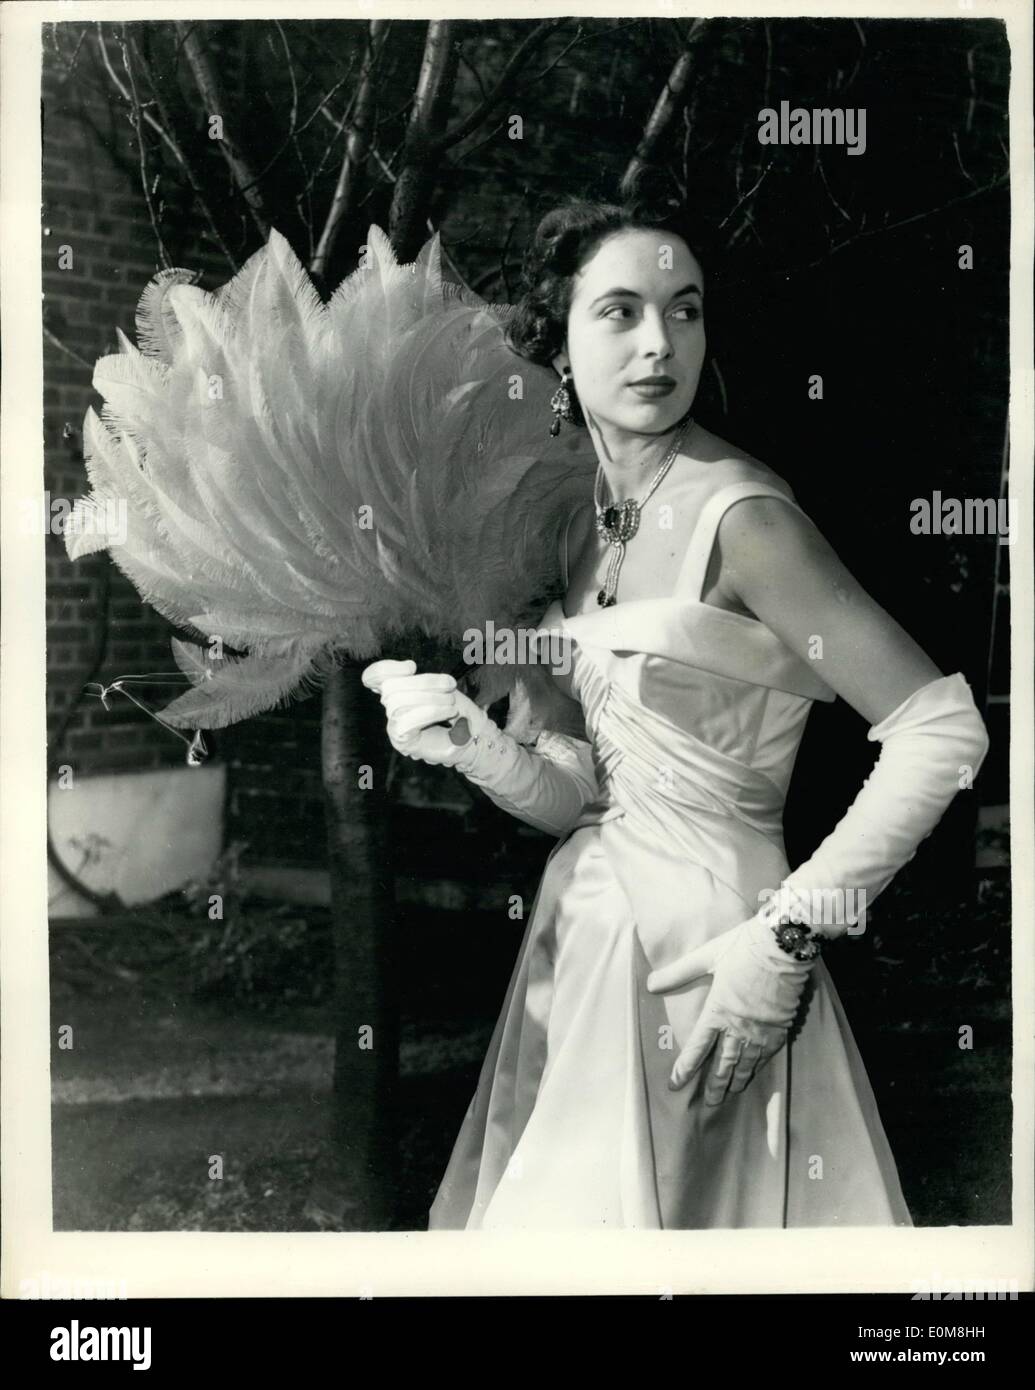 12. Dezember 1953 - Modell Mannequins Kleider für königliche Kleid zeigen. 40 Schaufensterpuppen zeigen heute britische Mode der Königin-Mutter. Sie werden von den Top-Ten - The integriert Gesellschaft der britischen Mode-Designer - Kleidung und zeigen sie am Haus von Lady Clark, Präsident der Gesellschaft. Keystone-Fotoshows: '' Grand Tier'' ein Digby Morton-Kleid - von Marla Scarafia getragen. Es ist ein hell Topaz satin Ballkleid unter Berufung für Auswirkungen auf den Schnitt des Gewebes und sorgsam gearbeiteten Oberteil Drapierung der Farbfelder die Rippen. Stockfoto